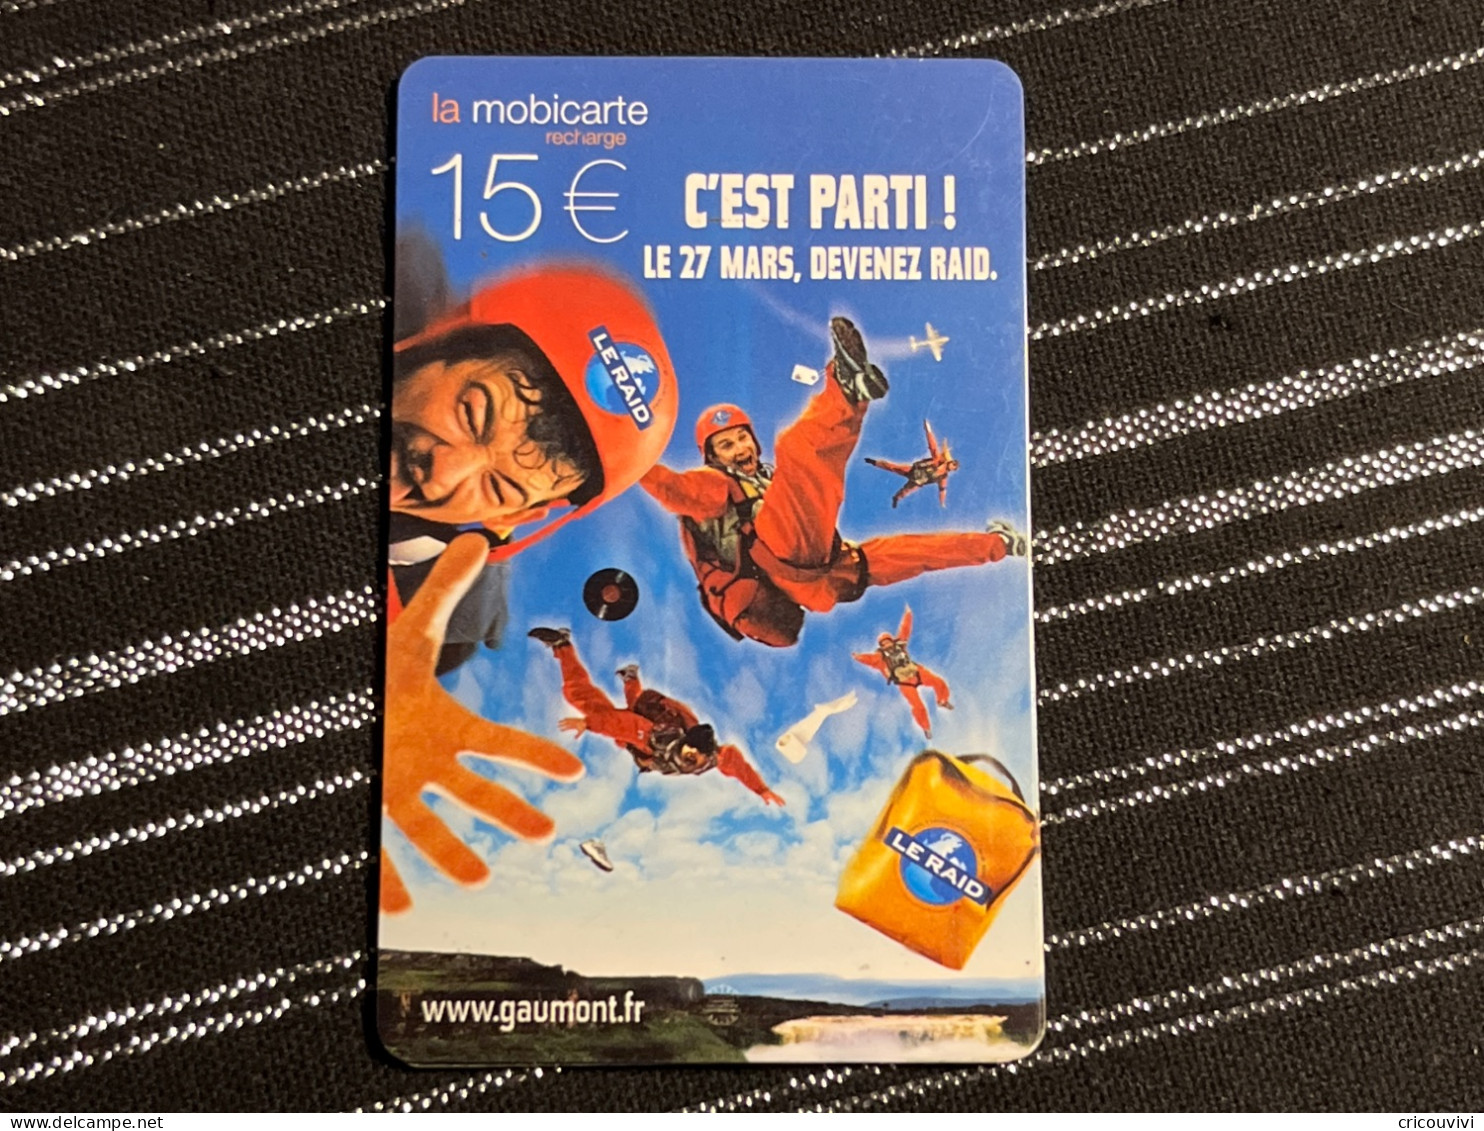 Mobicarte Pu211 - Cellphone Cards (refills)